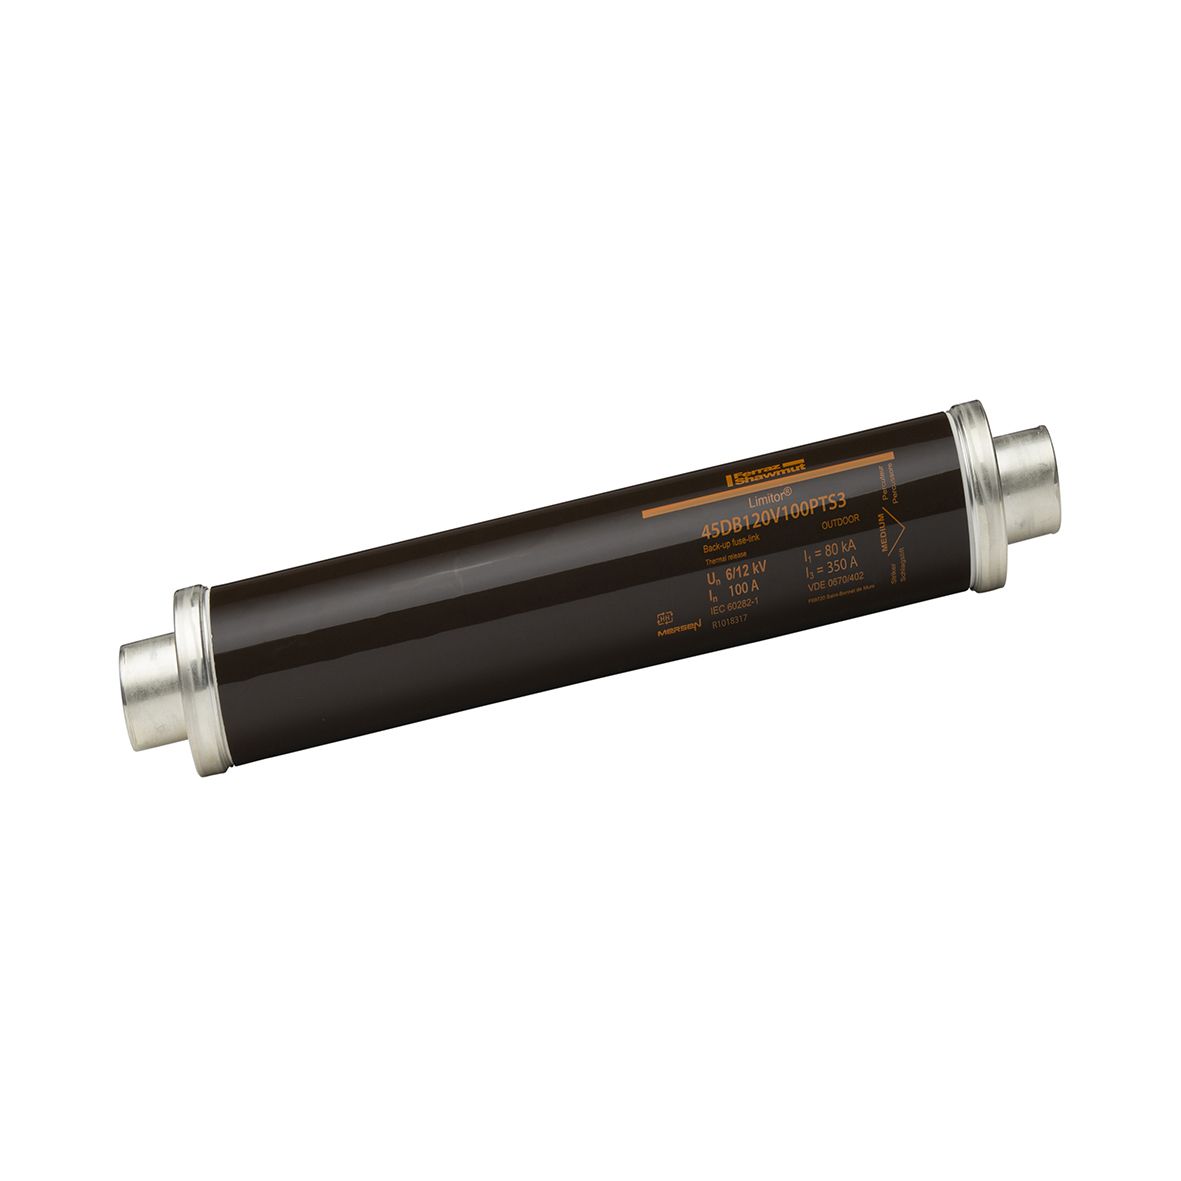 R1018317 - HV fuse DIN 43625, 12kV, 100A, 442mm, 45mm, thermal striker